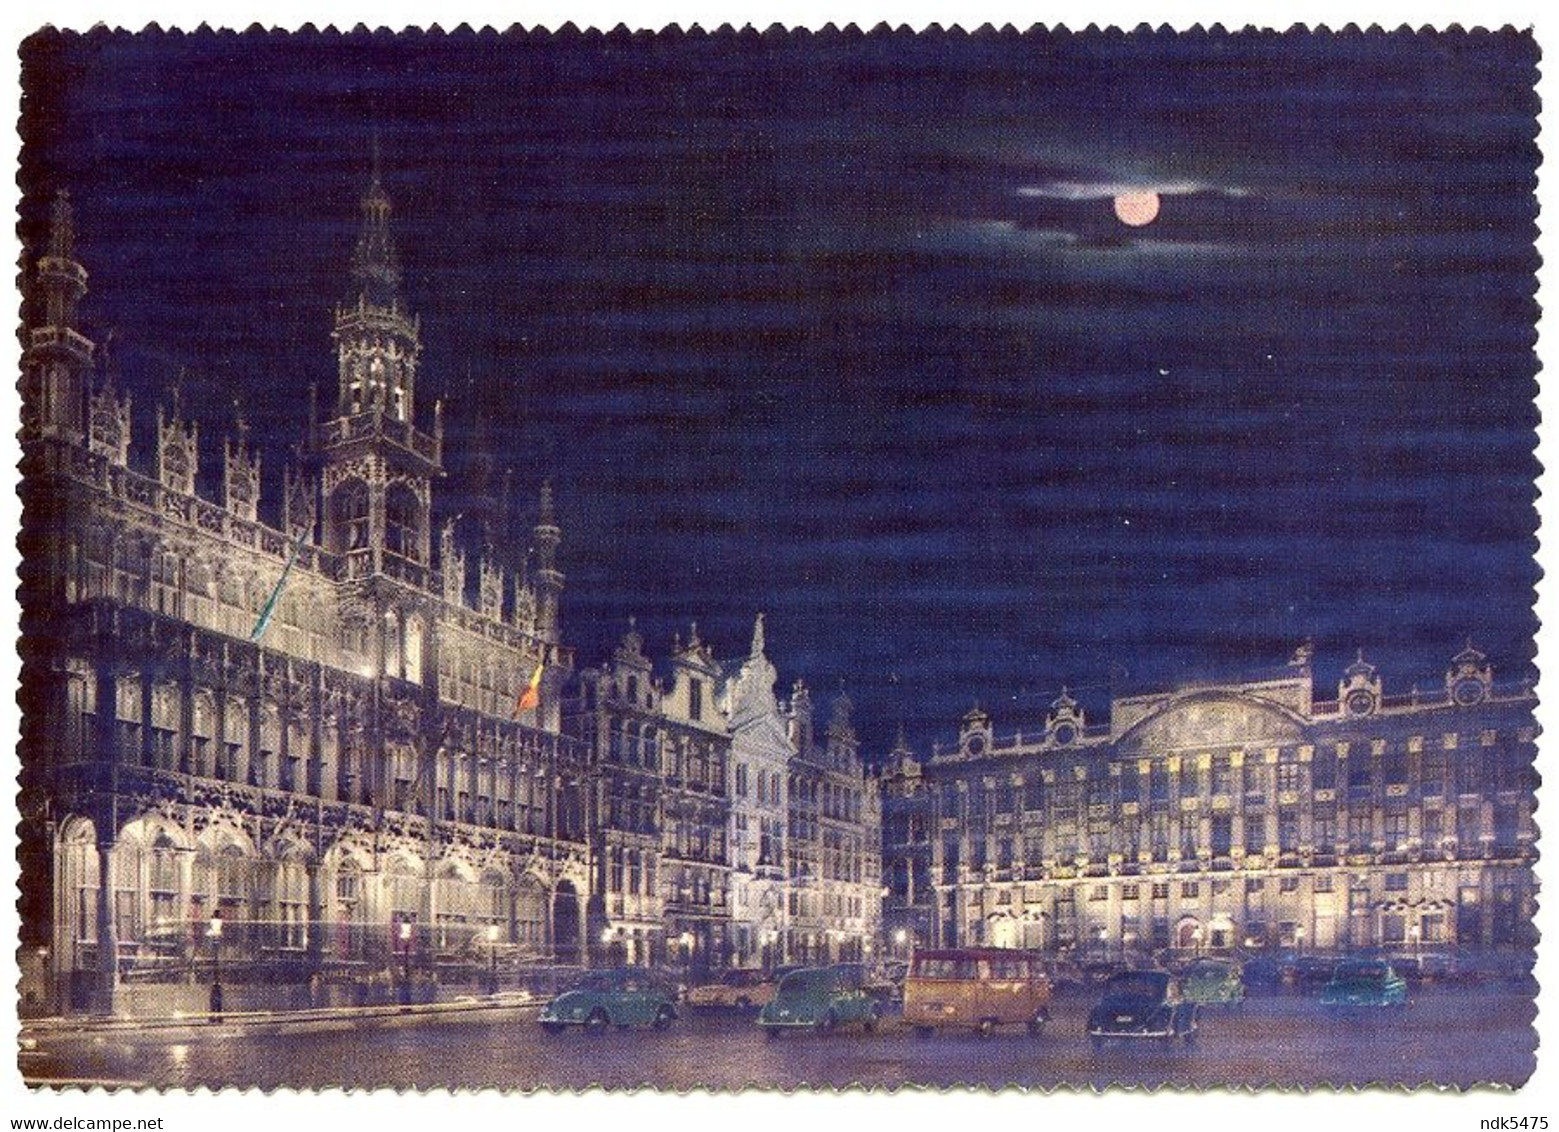 BELGIQUE : BRUXELLES - UN COIN DE LA GRAND'PLACE (10 X 15cms Approx.) - Brussels By Night